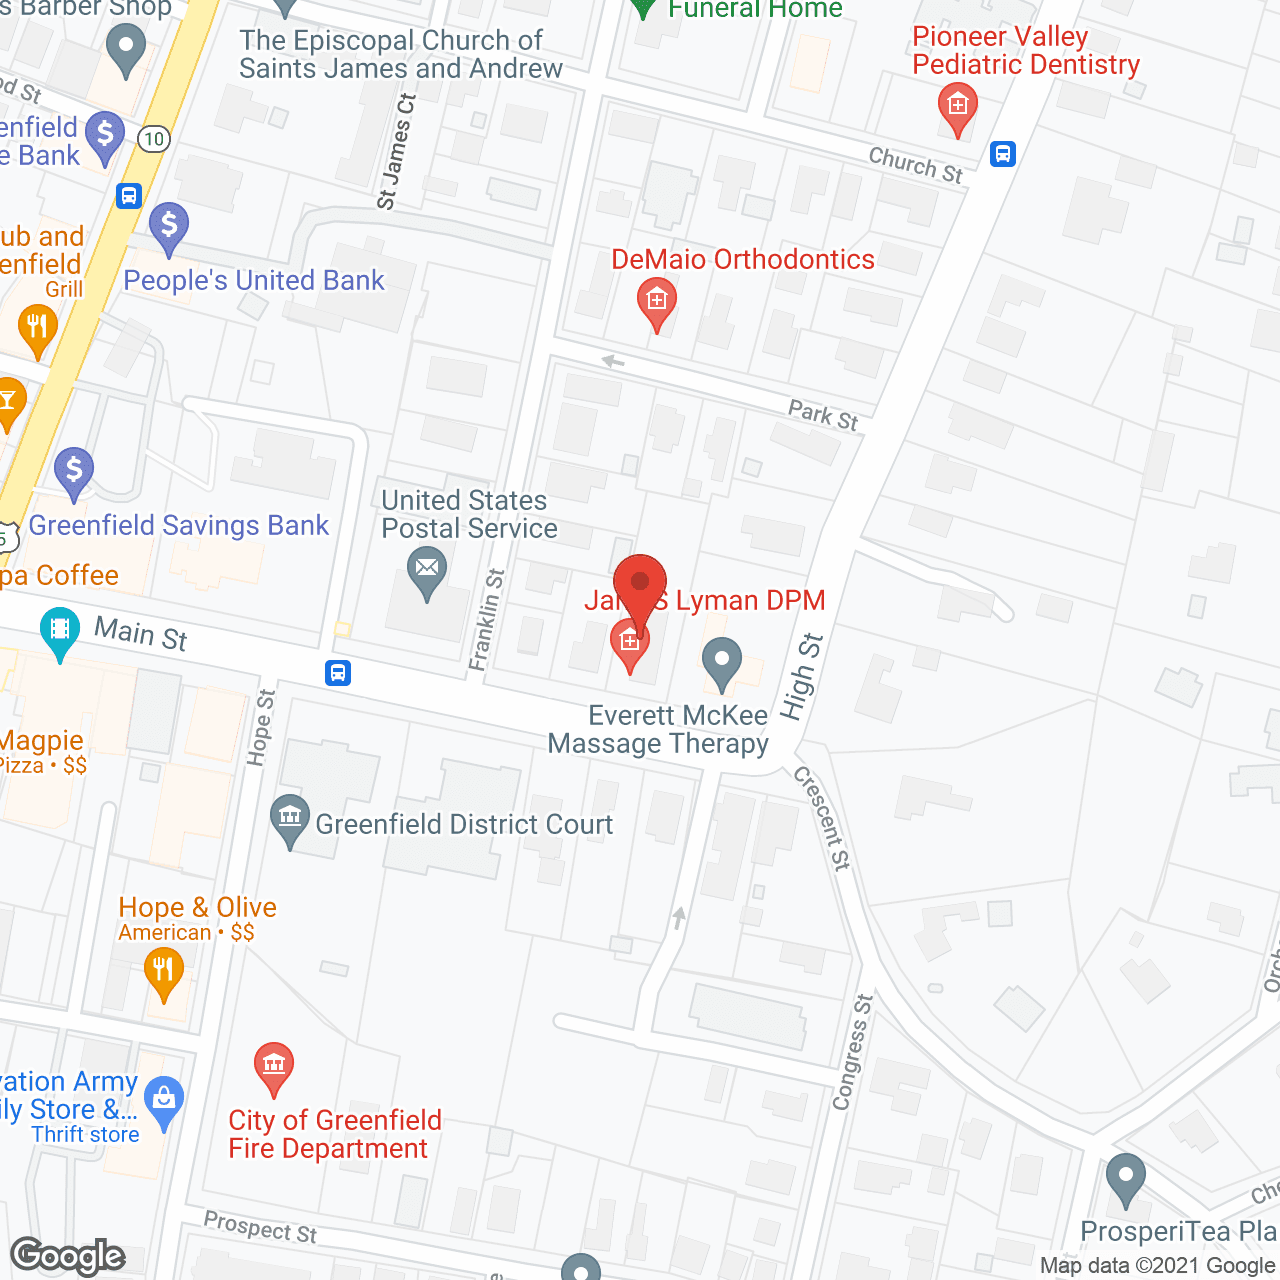 Overlook VNA in google map